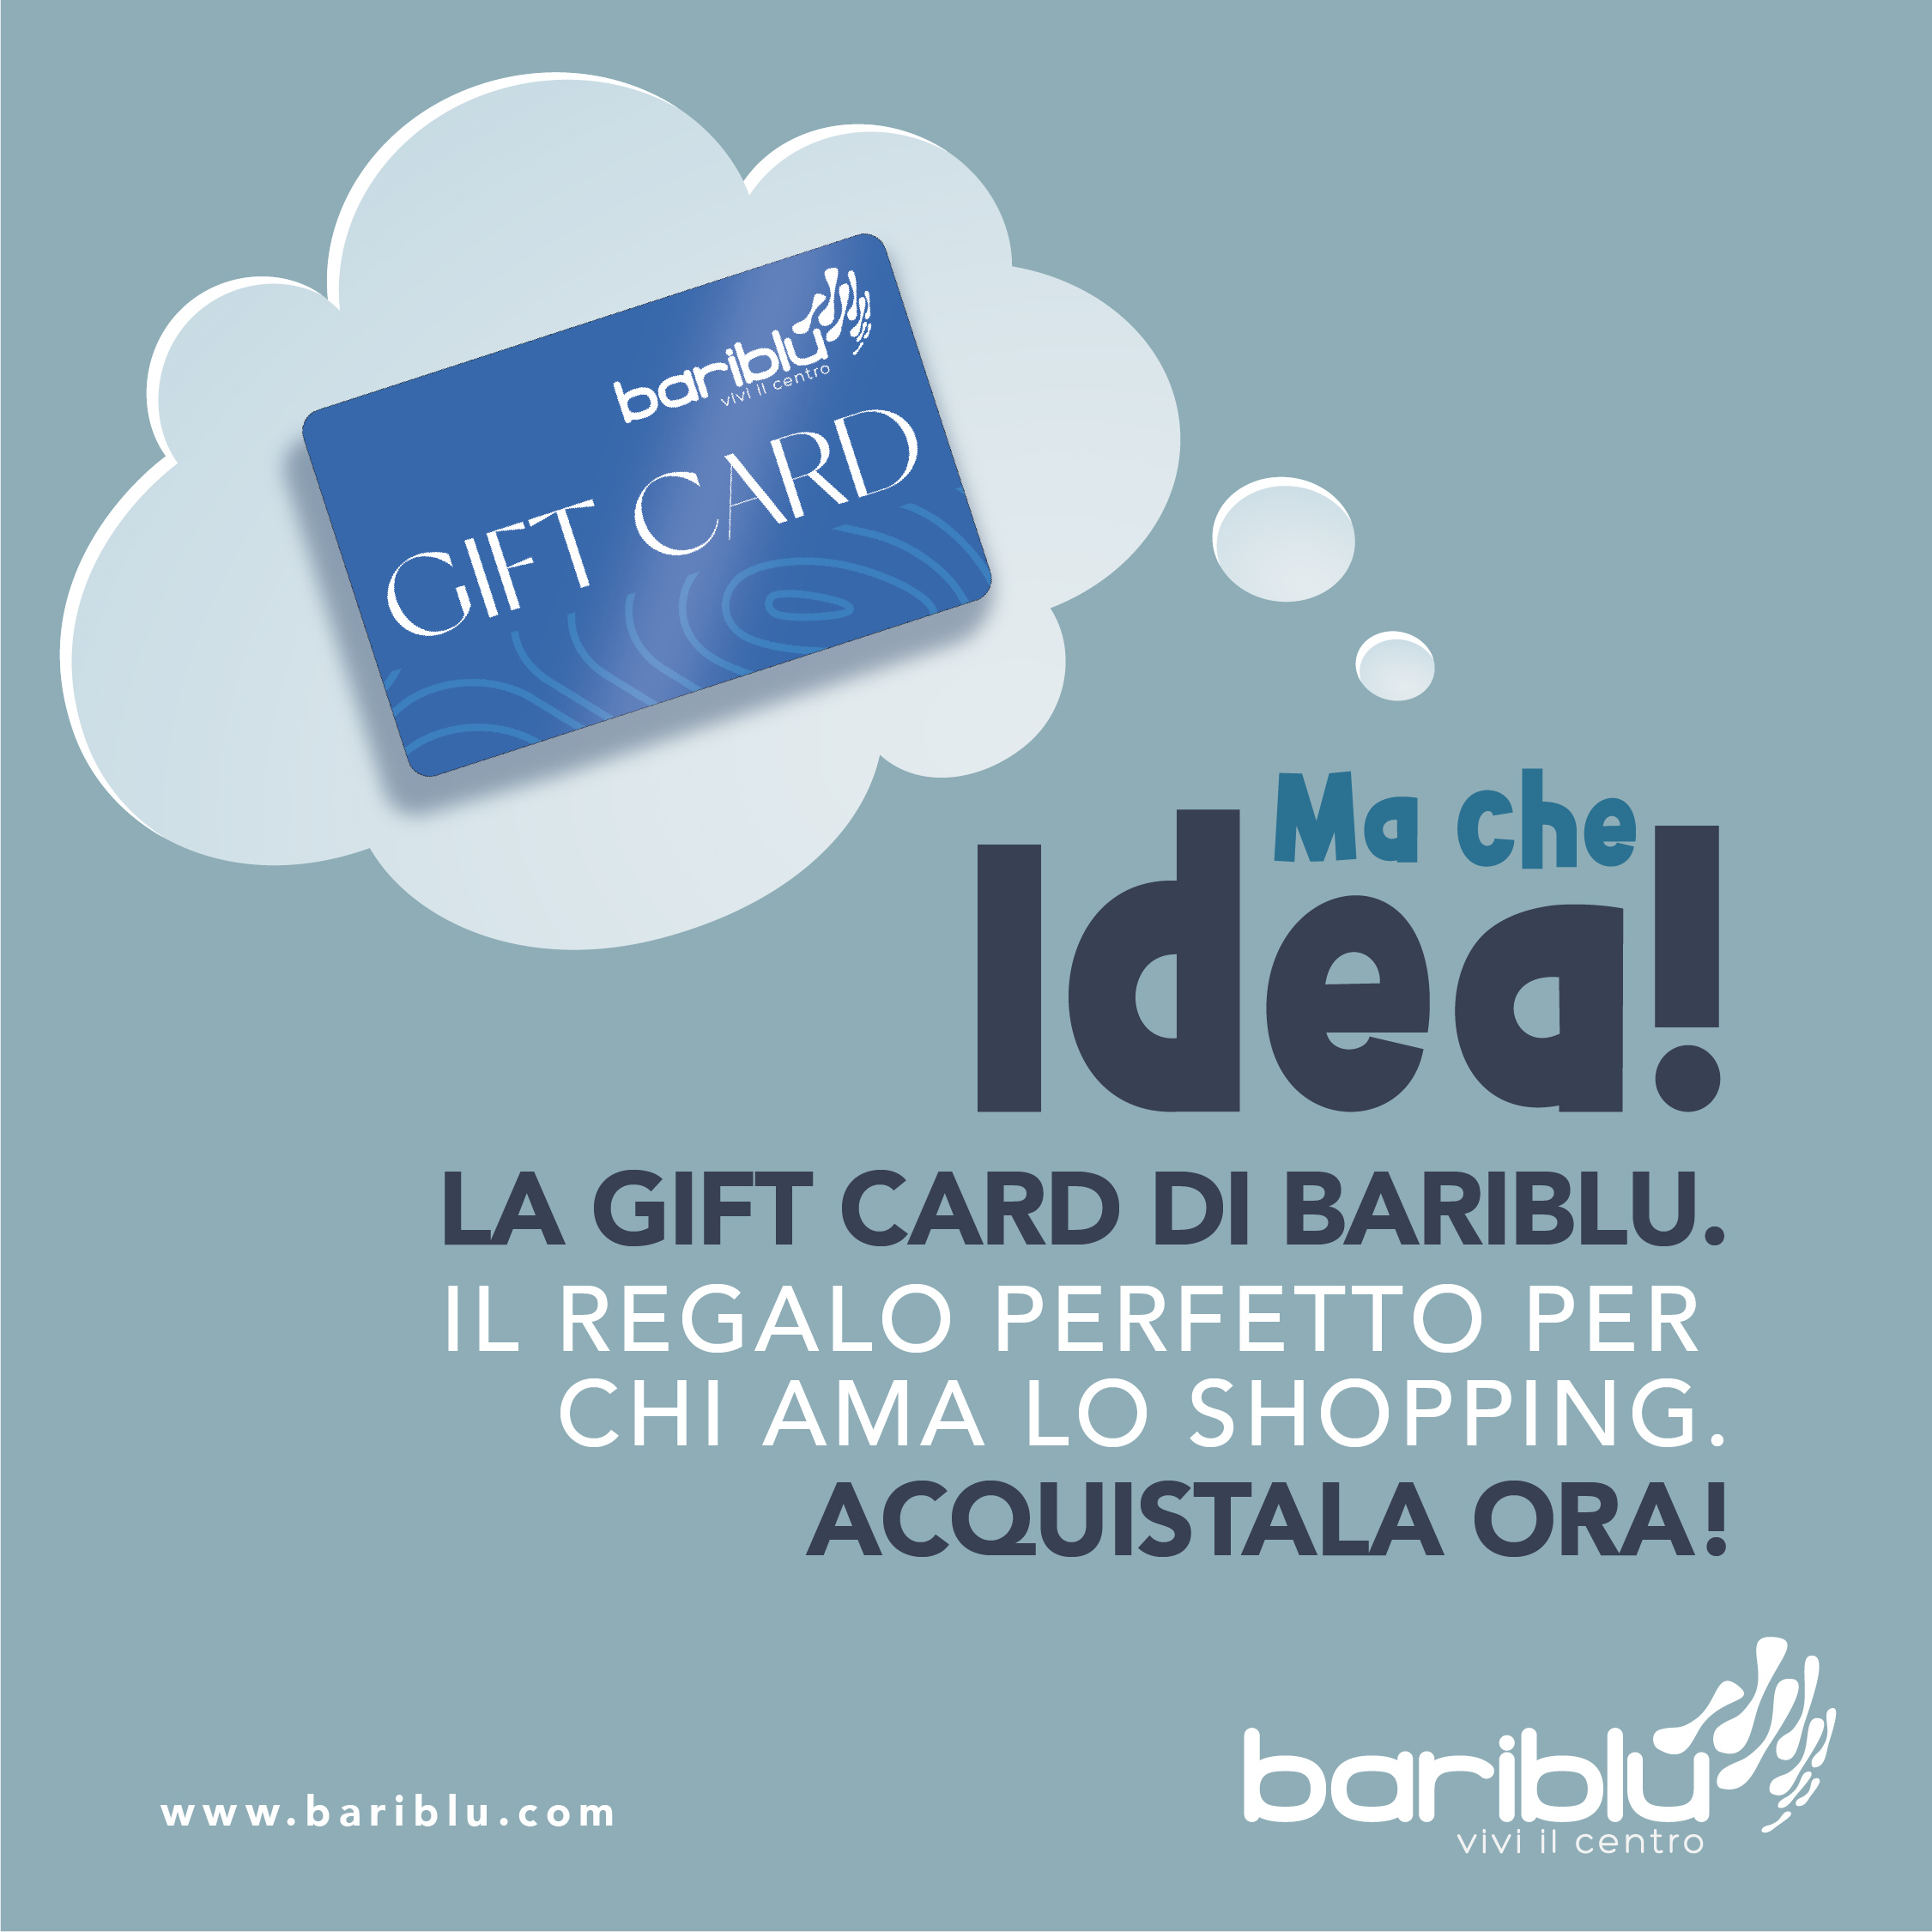 La Gift Card di Bariblu